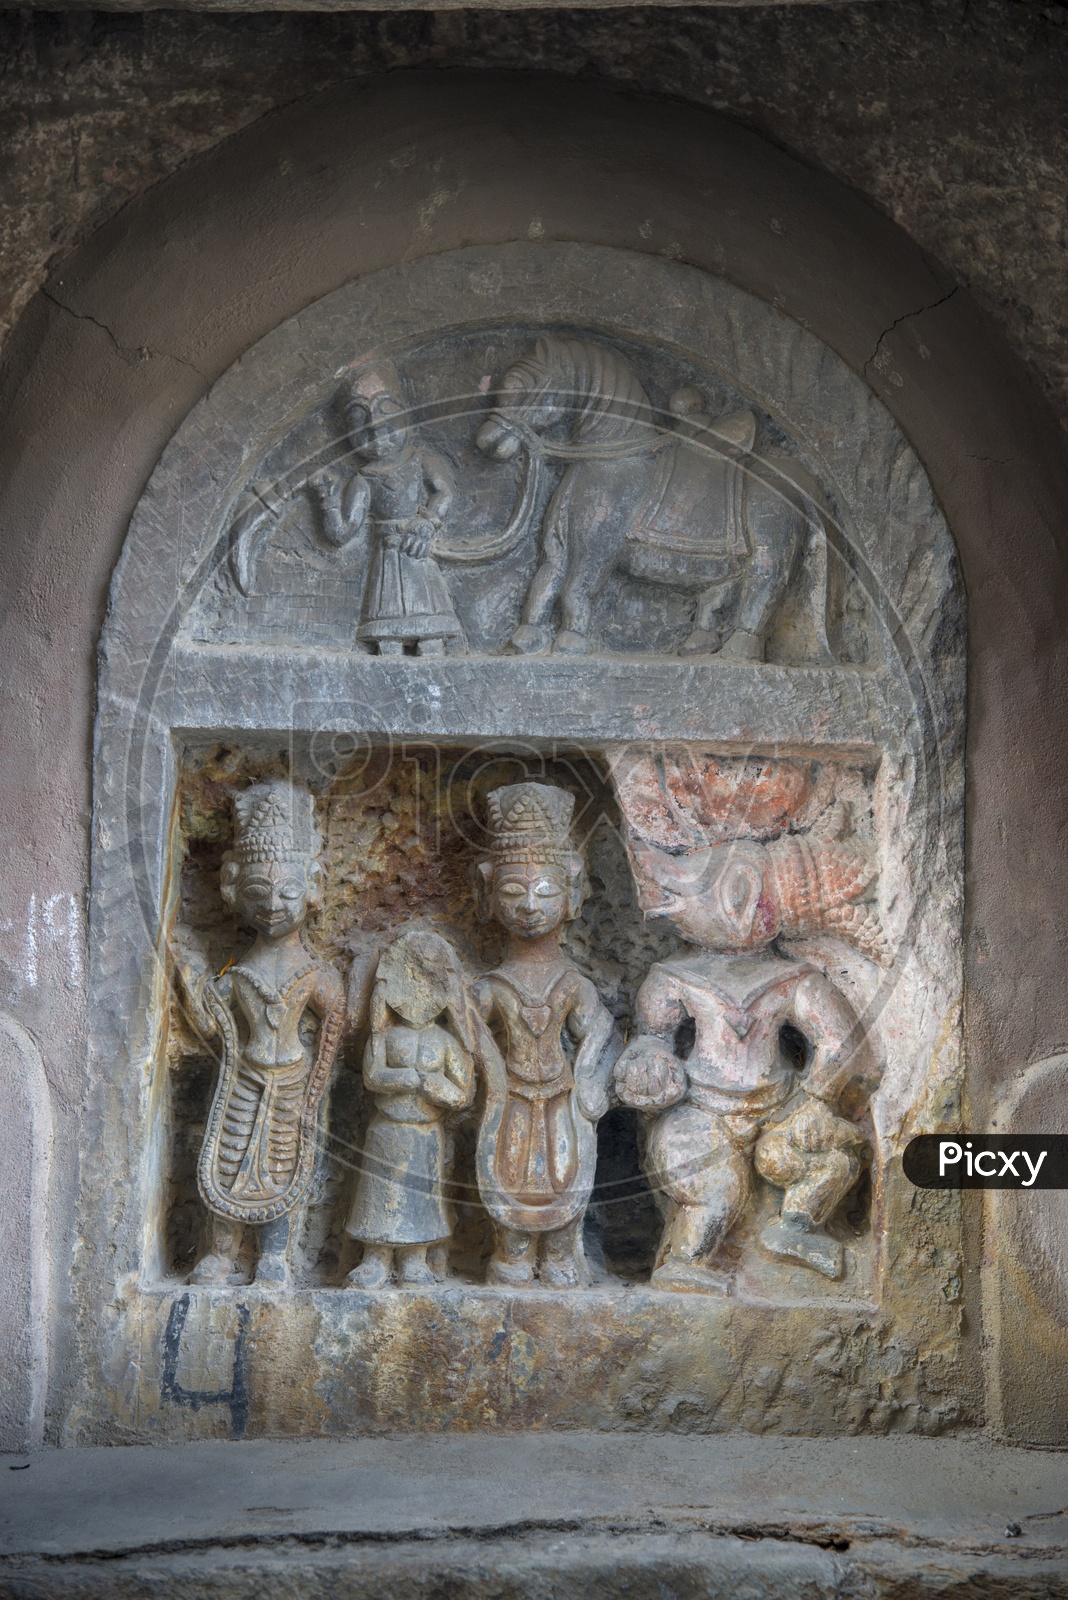 Sculptors at Chamba, Himachal Pradesh